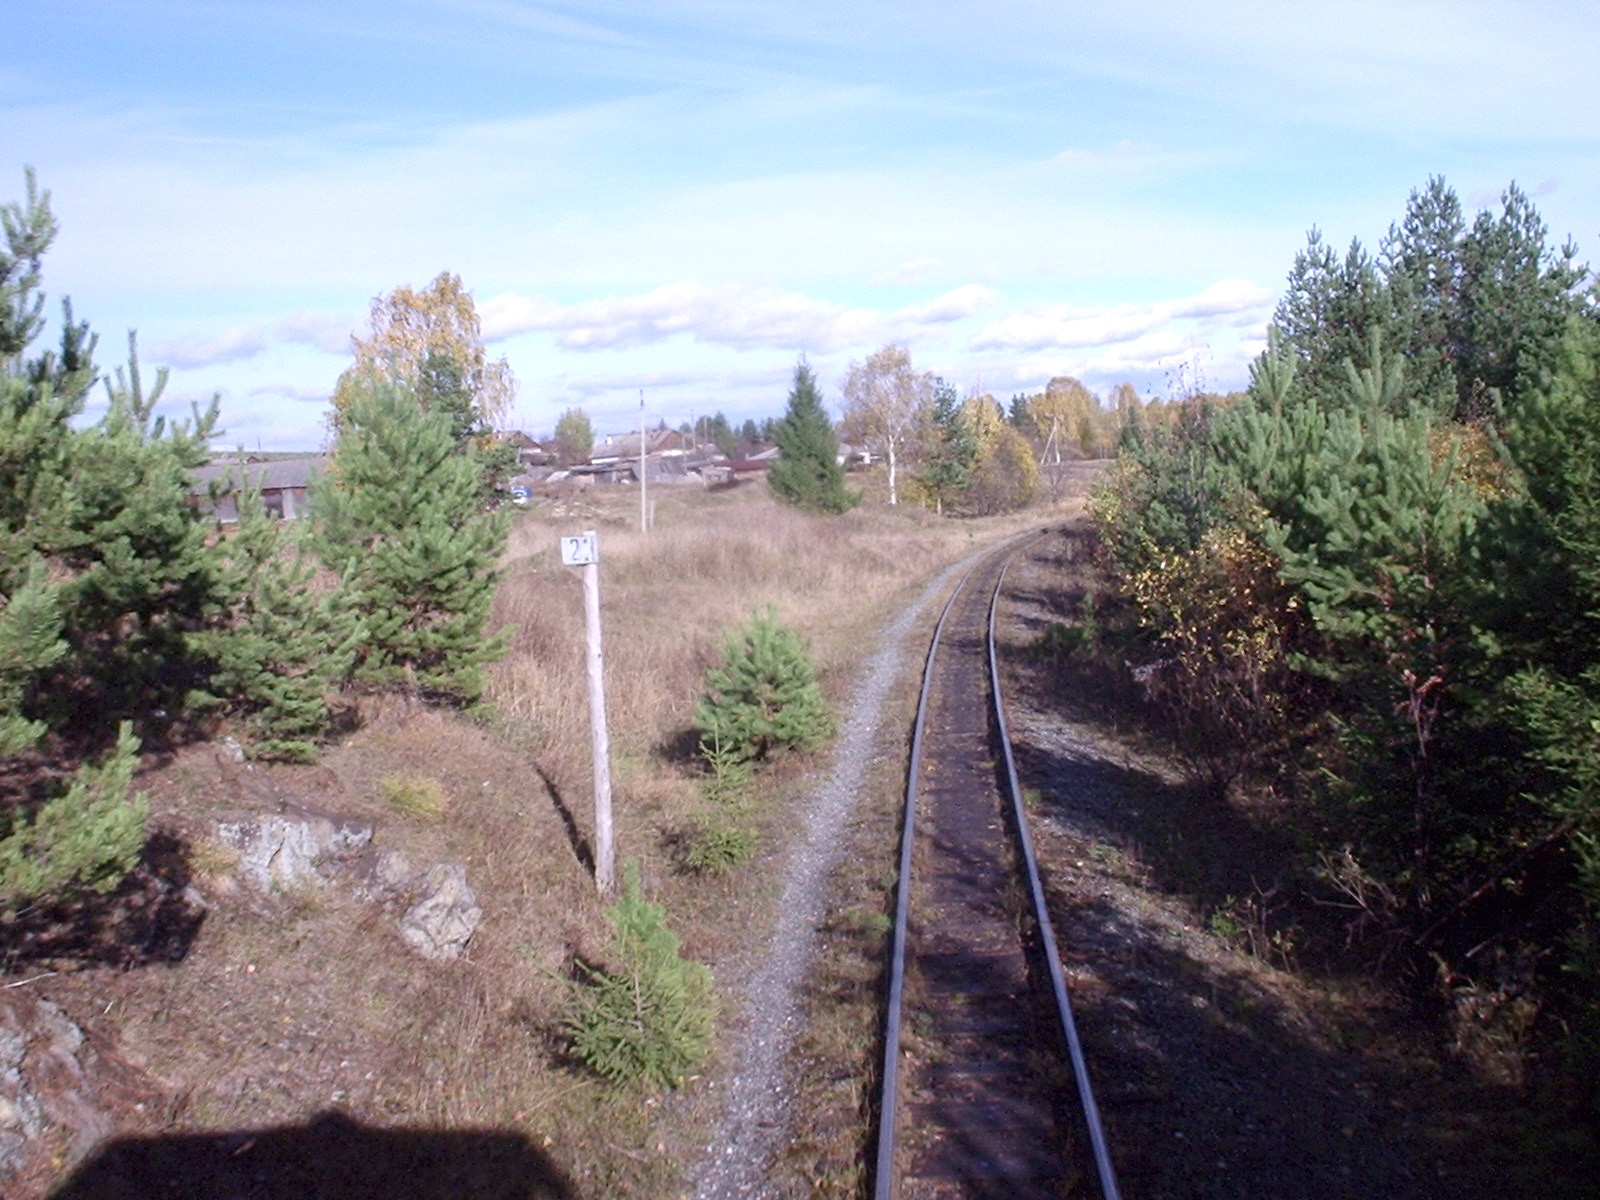 Висимо-Уткинская узкоколейная железная дорога  - фотографии, сделанные в 2006 году (часть 10)